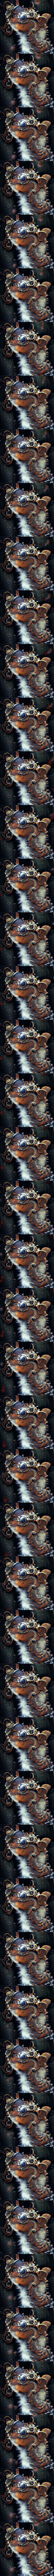 Steampunked #009 - Steampunk Squirrel